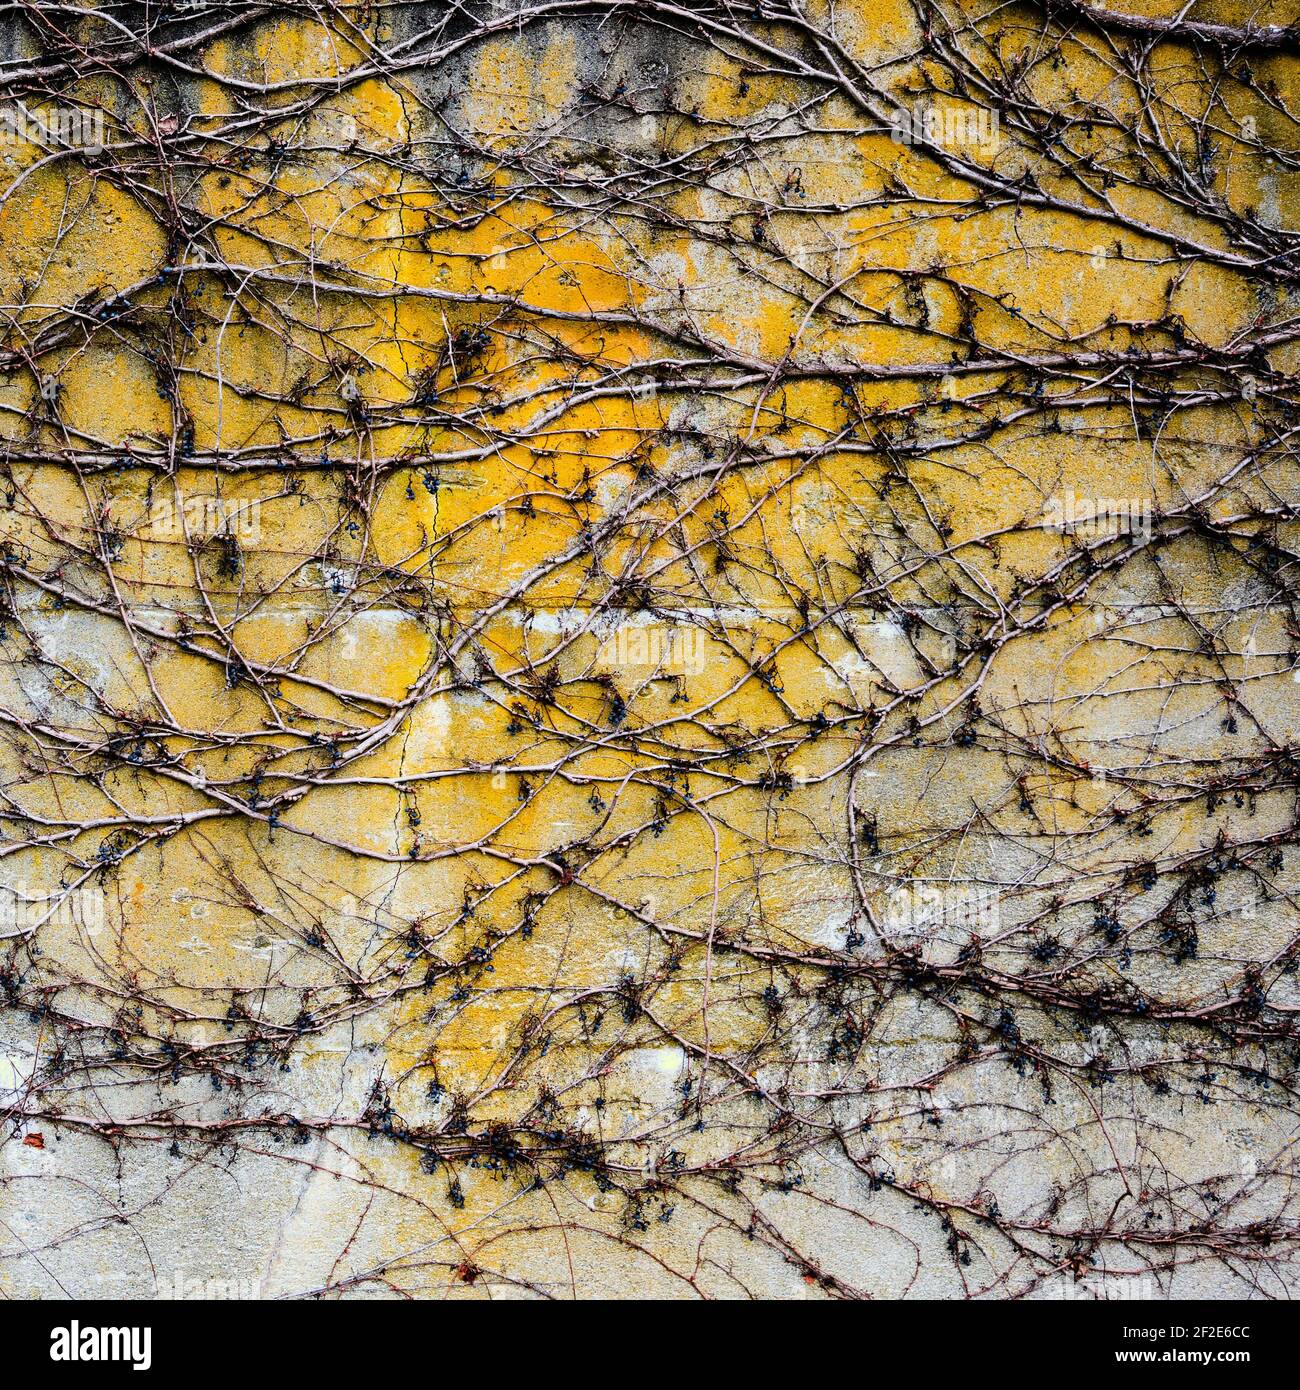 L'hiver, un enchevêtrement de vignes sans feuilles crée un motif complexe sur le béton exposé avec des teintes jaunes, grises et blanches Banque D'Images